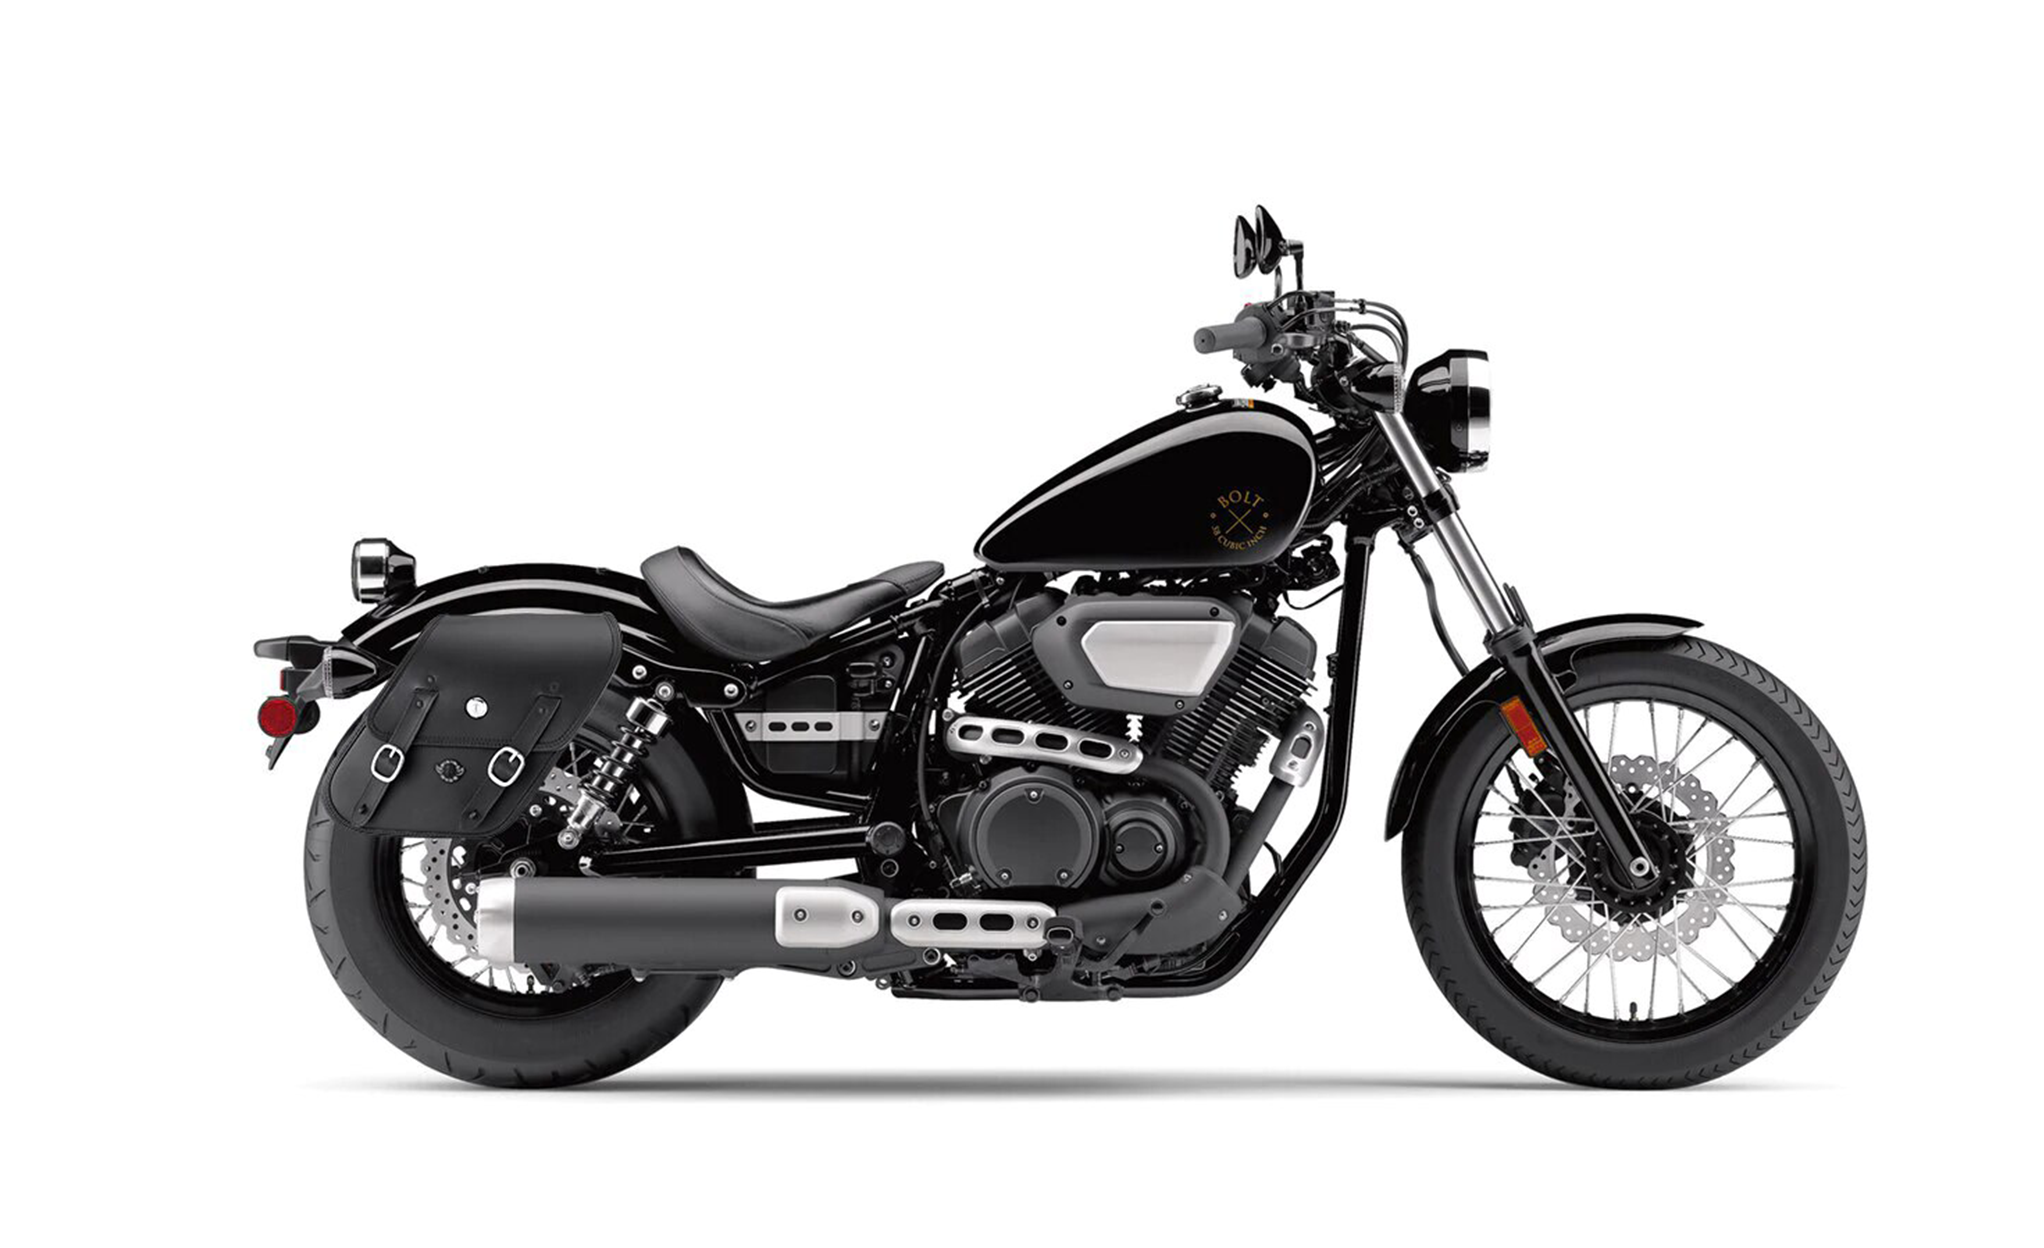 Viking Drifter Large Yamaha Bolt Specific Leather Motorcycle Saddlebags on Bike Photo @expand